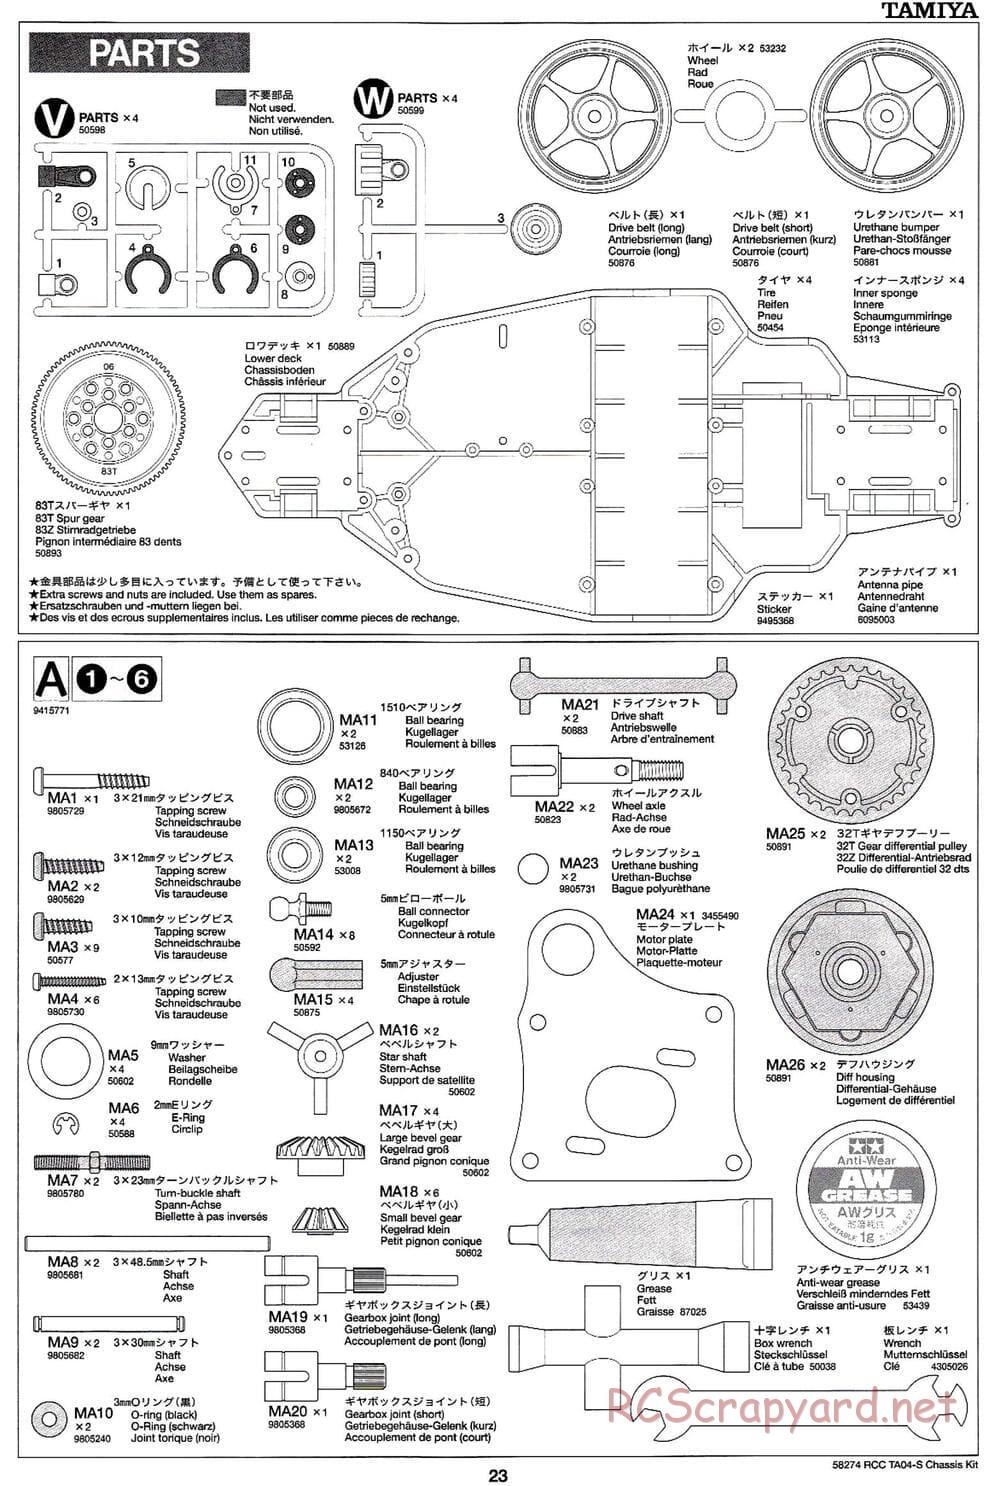 Tamiya - TA-04S Chassis - Manual - Page 23